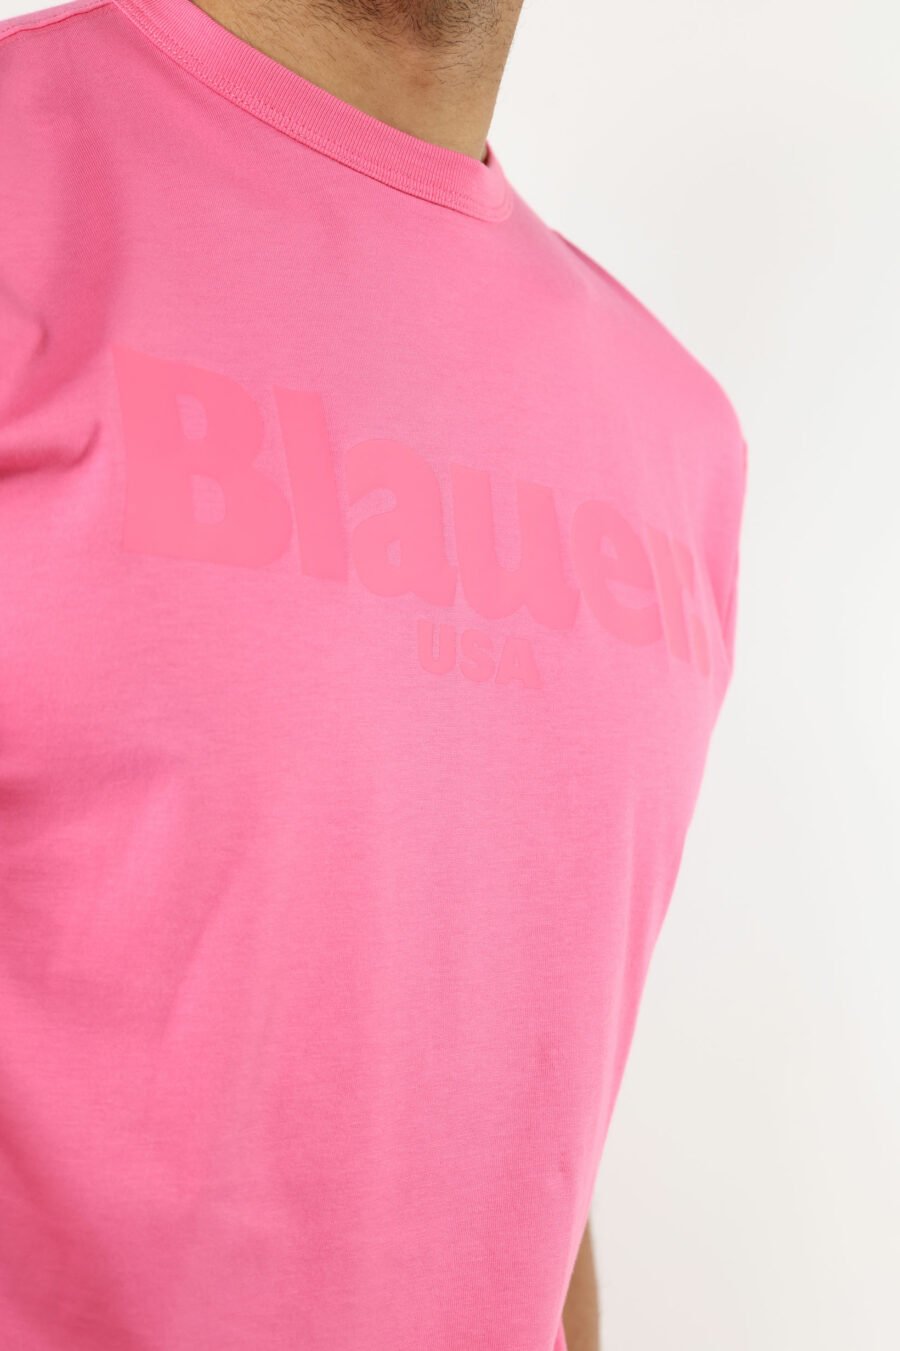 Camiseta rosa con maxilogo monocromático centro - 111119